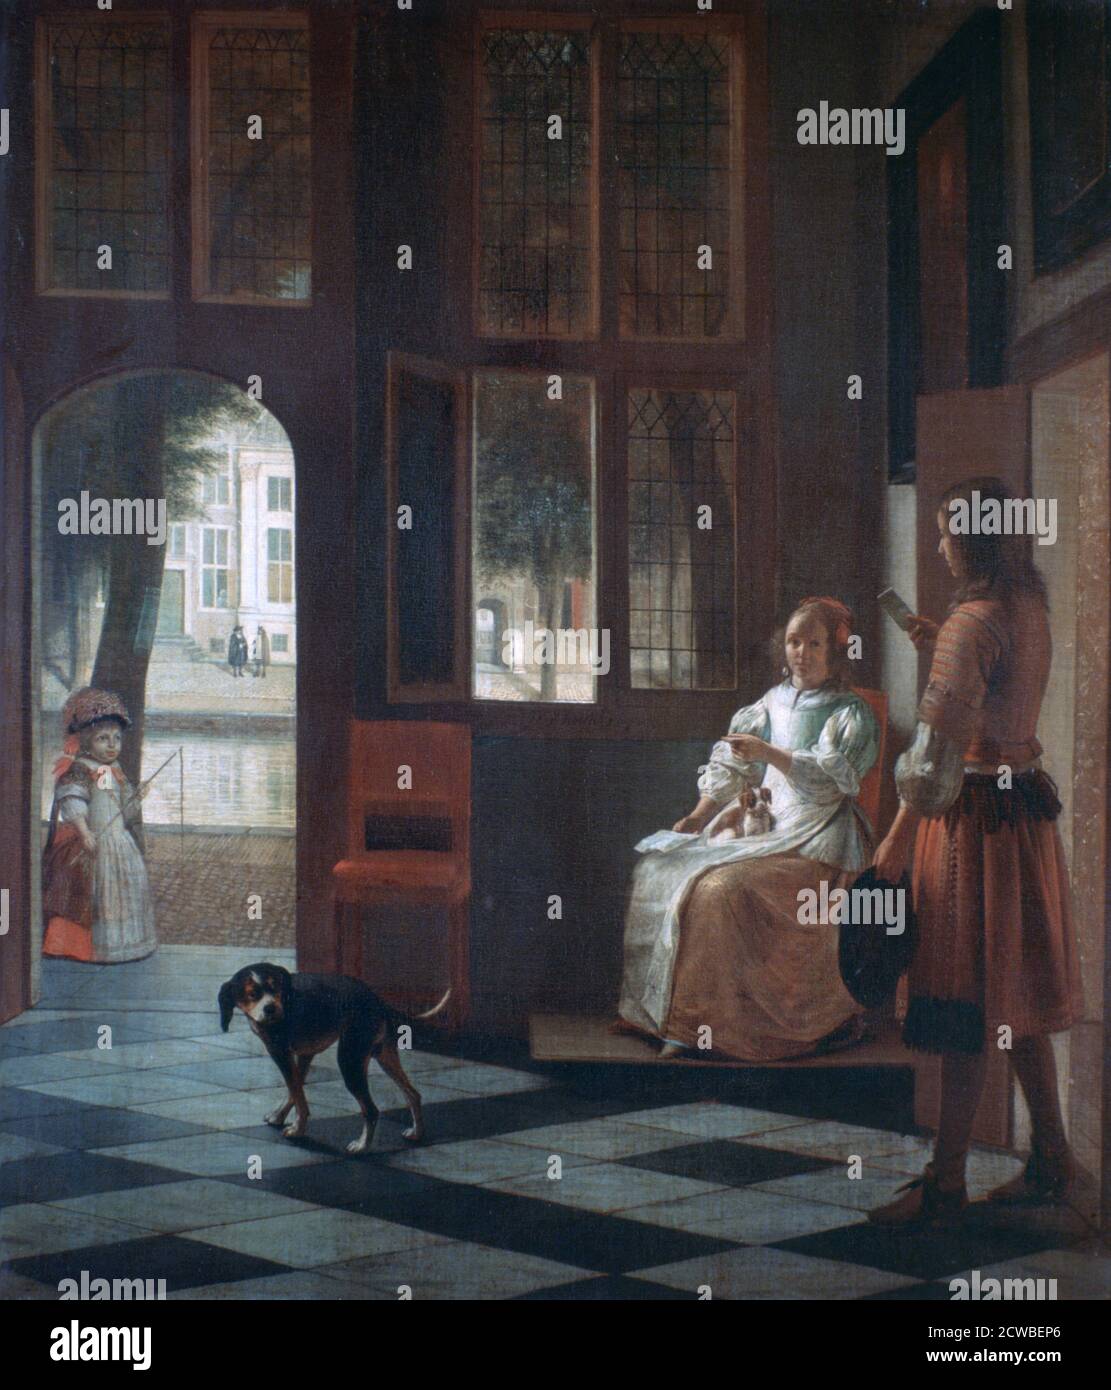 Eine Frau Regie einen jungen Mann mit einem Brief Künstler: Pieter de Hooch. Pieter de Hooch (1629-1684) war ein niederländischer Maler des Goldenen Zeitalters, der für seine Genrewerke ruhiger häuslicher Szenen berühmt war. Stockfoto